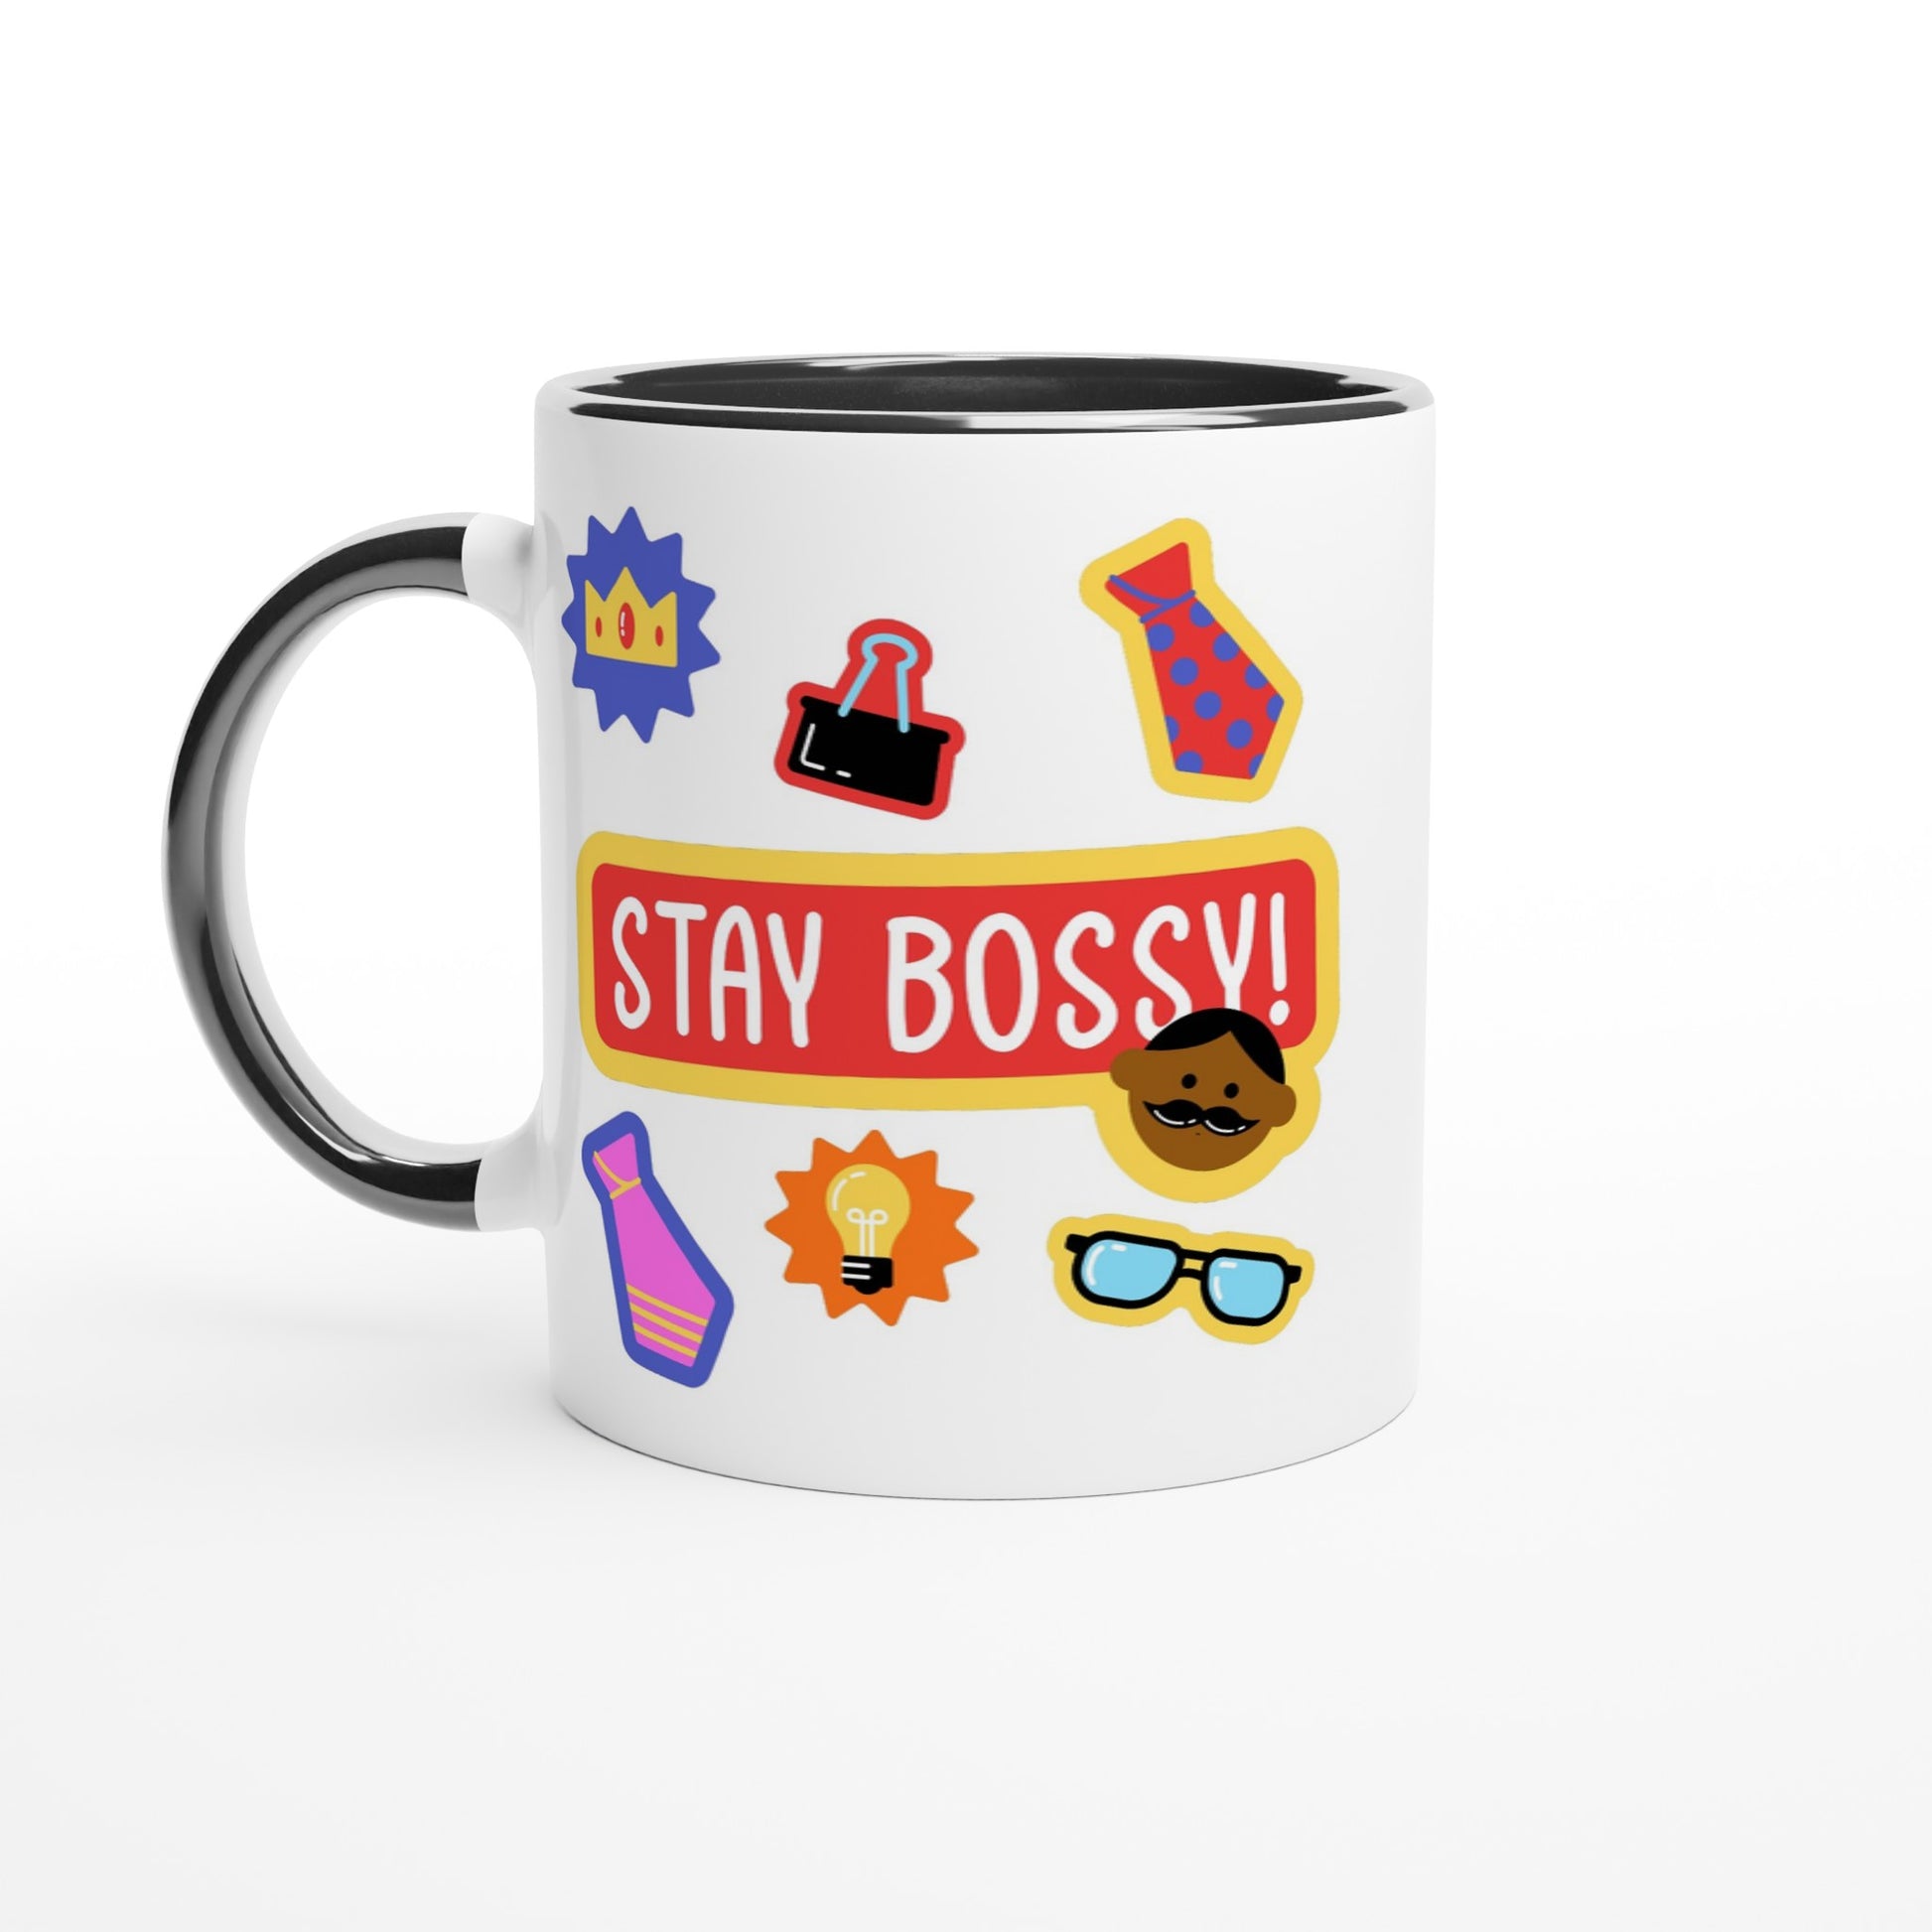 Stay Bossy, Boss Mug - White 11oz Ceramic Mug with Colour Inside Ceramic Black Colour 11oz Mug Funny